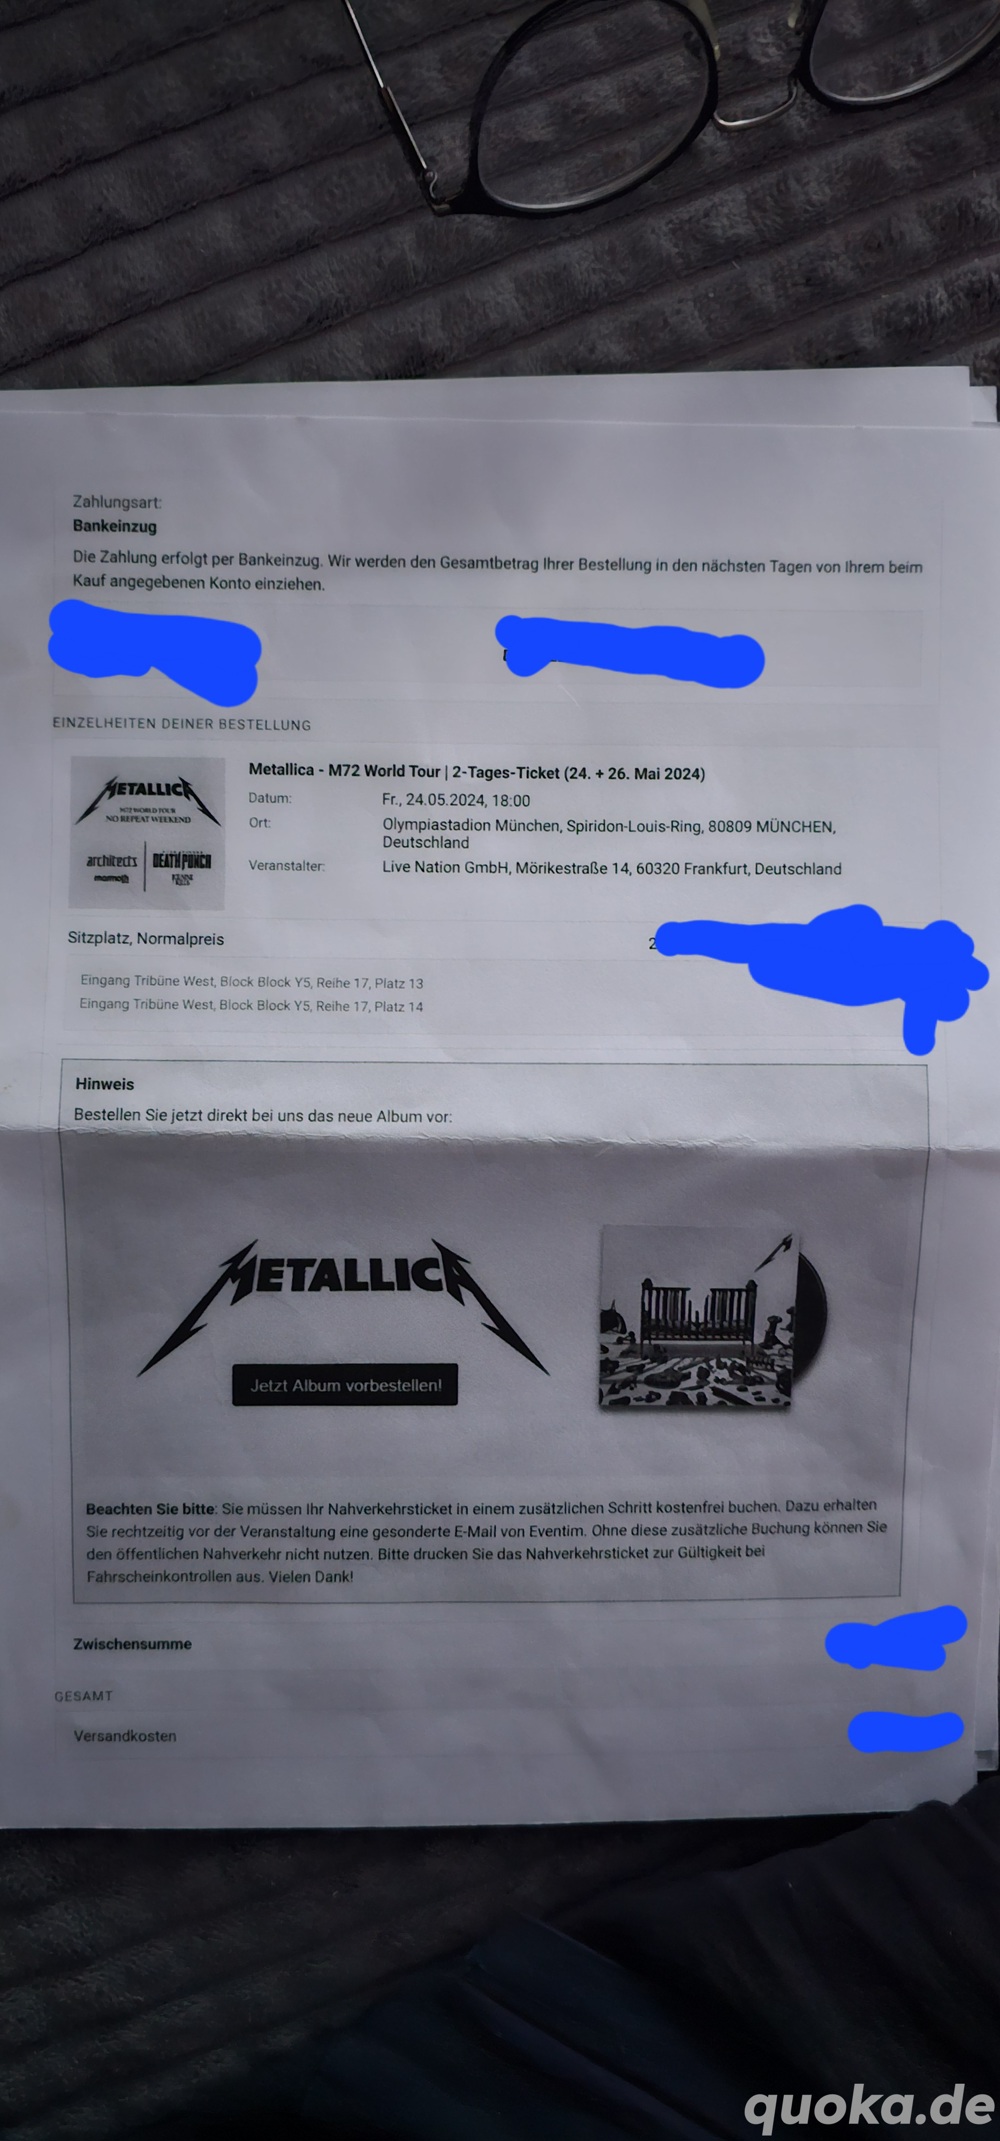 2x Tickets für Metallica in München.  Die Tickets sind für beide Konzerte!!! 24. + 26. Mai 2024.